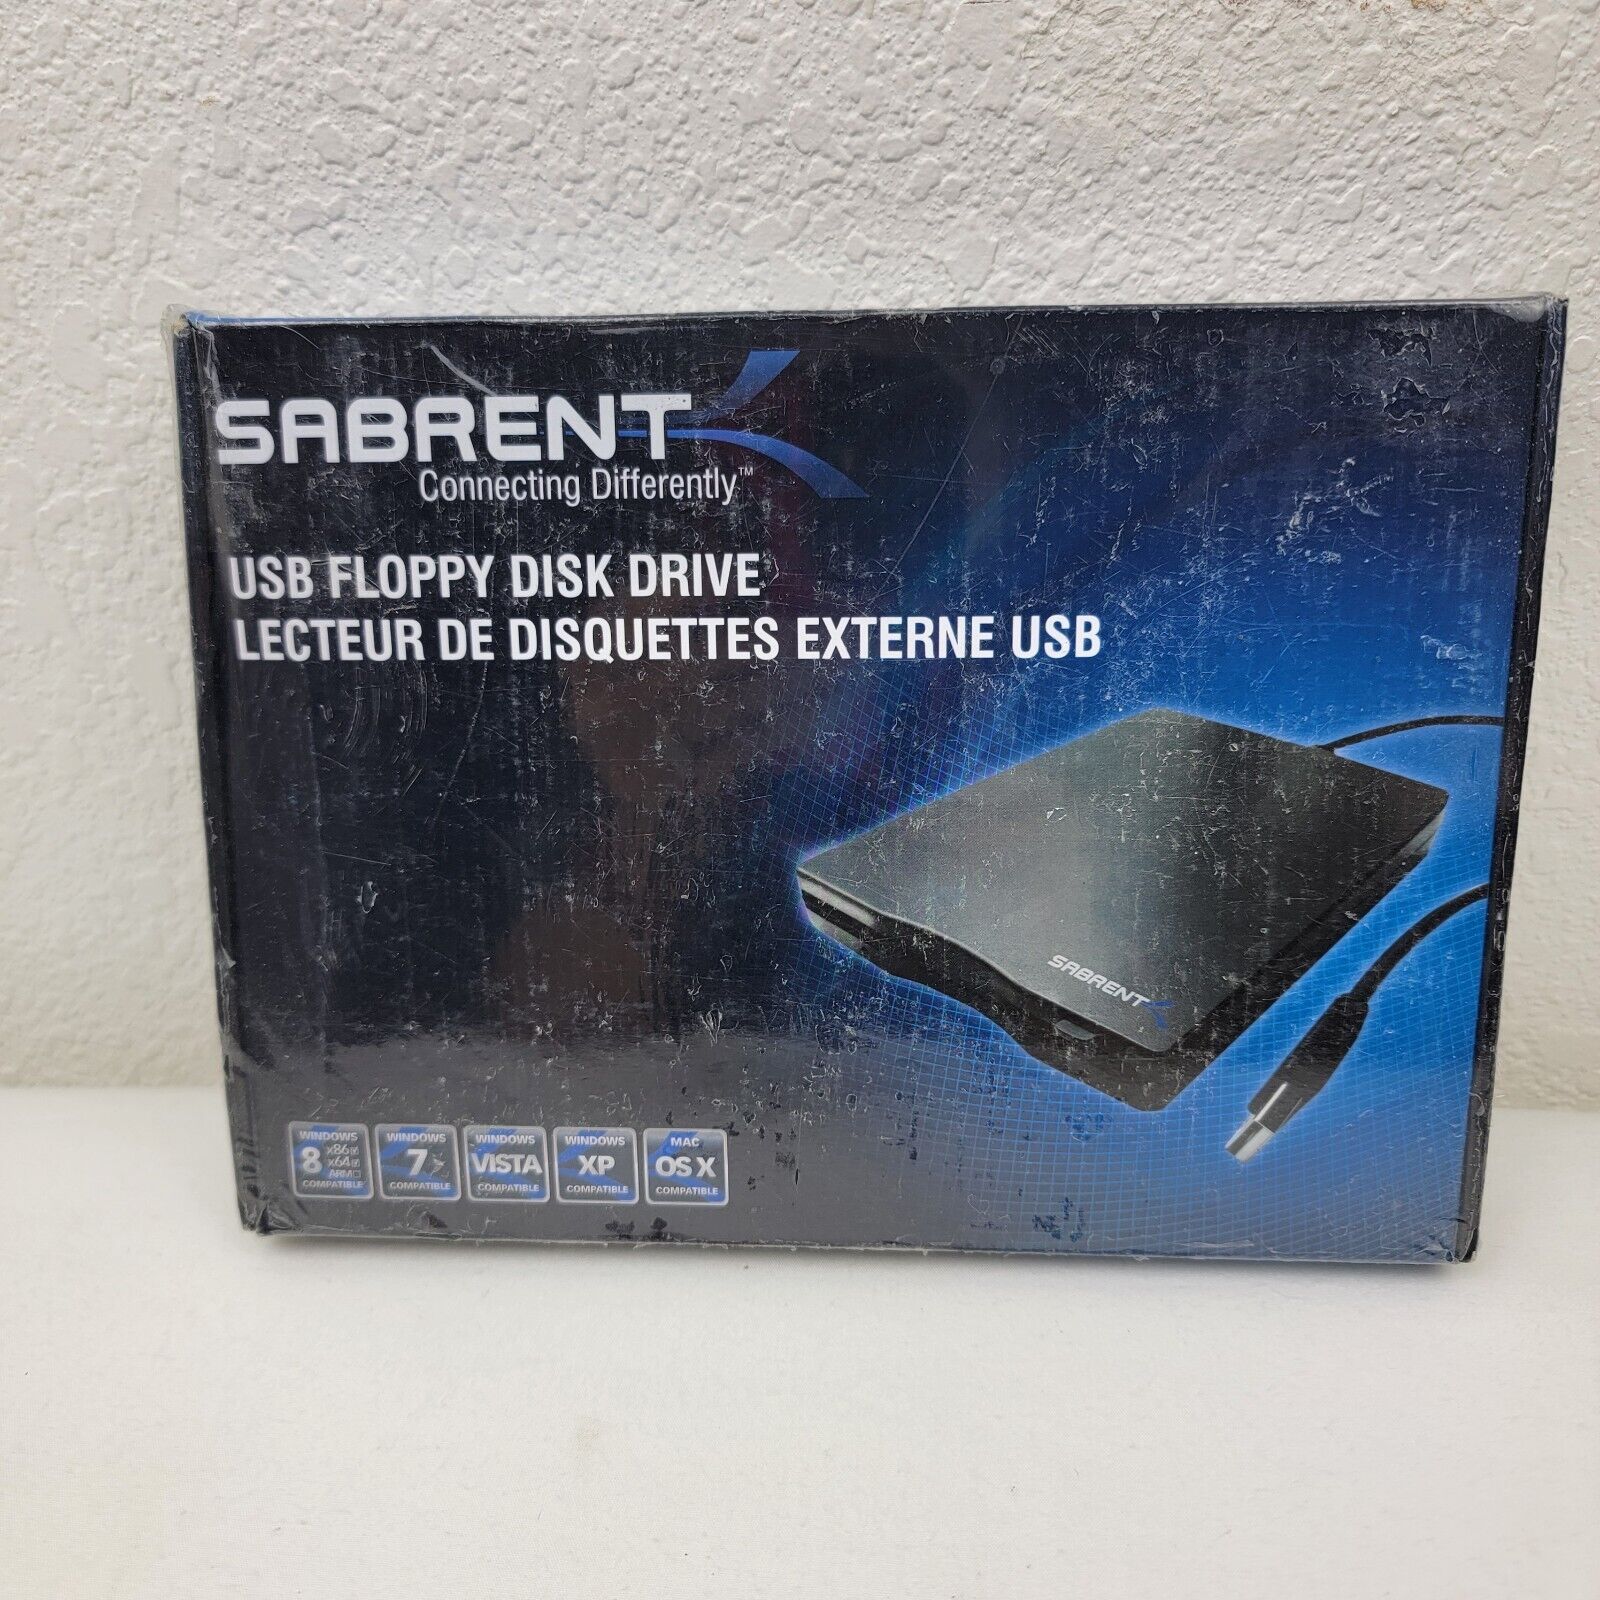 Sabrent SBT-UFDB 1.44MB USB Floppy Disk Drive